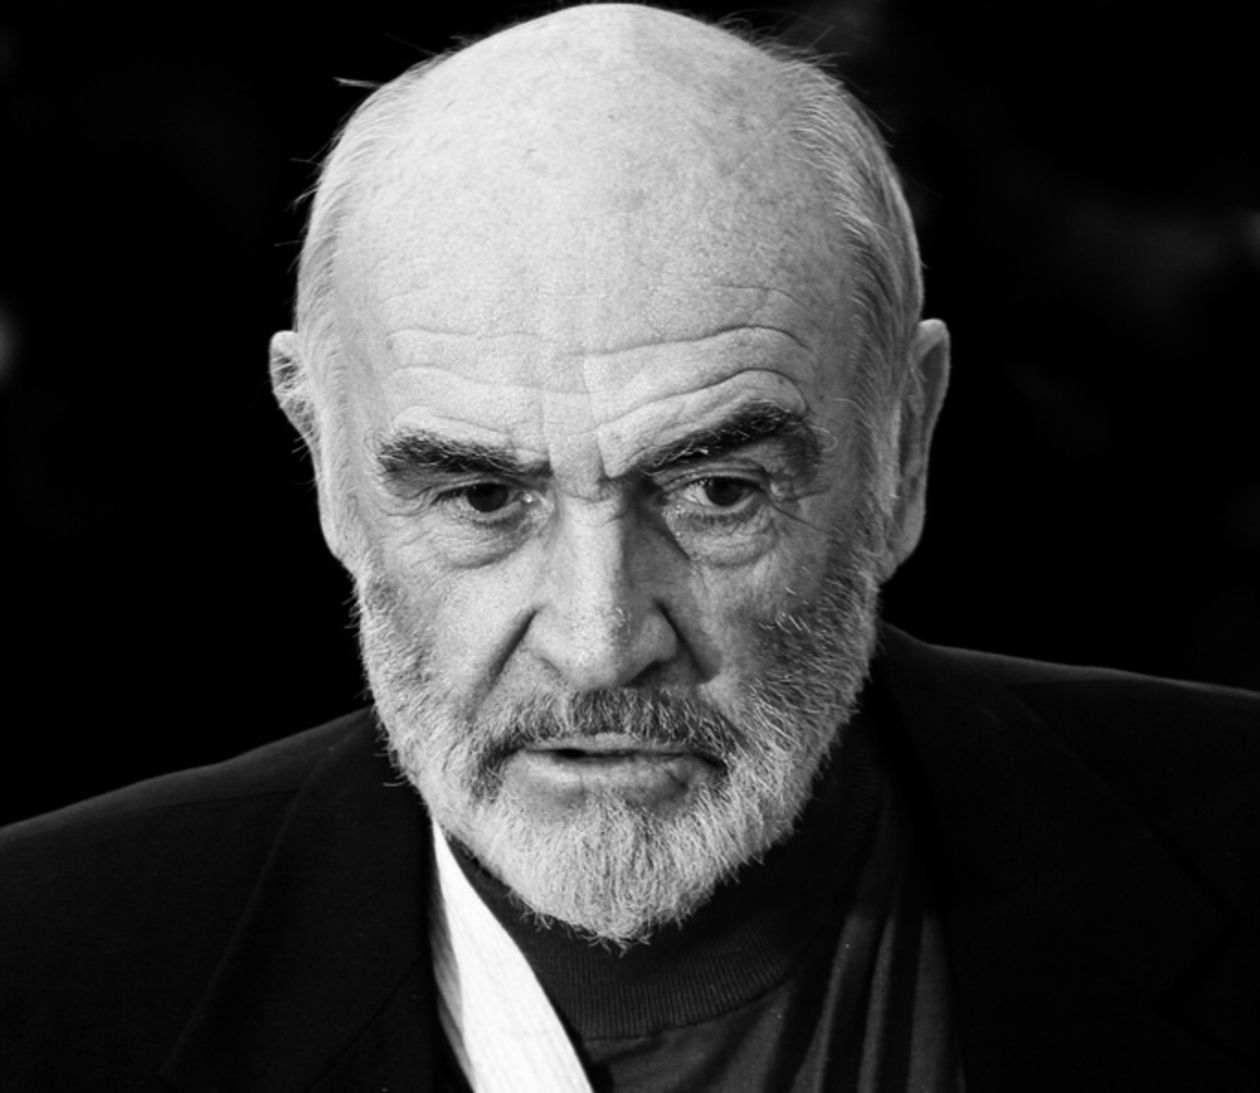  <p><strong>Sean Connery</strong> </p>
<p class="MsoNormal">Aktor i producent filmowy. Wystąpił w kilkudziesięciu filmach, m.in. siedmiokrotnie wcielił się w rolę Jamesa Bonda. Laureat Oscara (&bdquo;Nietykalni&rdquo;), Złotego Globu i BAFTA.</p>
<p class="MsoNormal">Urodził się 25 sierpnia 1930 w Edynburgu. Pracował m.in. jako pomocnik rzeźnika i model. W połowie lat 50. zajął się aktorstwem.</p>
<p class="MsoNormal">W 1961 wygrał w castingu do roli Jamesa Bonda. Rok p&oacute;źniej na ekrany kin trafił pierwszy film z tej serii &bdquo;Doktor No&rdquo;, kt&oacute;ry okazał się wielkim przebojem kinowym.</p>
<p class="MsoNormal">W kolejnych latach zagrał też w takich filmach jak &bdquo;Imię R&oacute;ży&rdquo;, &bdquo;Twierdza&rdquo;, &bdquo;Polowanie na Czerwony Październik&rdquo;, &bdquo;Nieśmiertelny&rdquo;, &bdquo;Wydział Rosja&rdquo; , &bdquo;Indiana jones i ostatnia krucjata&rdquo;.</p>
<p><span style="font-size: 12.0pt; font-family: 'Times New Roman'; mso-fareast-font-family: 'Times New Roman'; mso-ansi-language: PL; mso-fareast-language: PL; mso-bidi-language: AR-SA;">W 2000 kr&oacute;lowa Elżbieta II nadała mu tytuł szlachecki</span></p>
<p><!-- [if gte mso 9]><xml>
 <w:WordDocument>
  <w:View>Normal</w:View>
  <w:Zoom>0</w:Zoom>
  <w:AutoHyphenation></w:AutoHyphenation>
  <w:HyphenationZone>21</w:HyphenationZone>
  <w:PunctuationKerning></w:PunctuationKerning>
  <w:ValidateAgainstSchemas></w:ValidateAgainstSchemas>
  <w:SaveIfXMLInvalid>false</w:SaveIfXMLInvalid>
  <w:IgnoreMixedContent>false</w:IgnoreMixedContent>
  <w:AlwaysShowPlaceholderText>false</w:AlwaysShowPlaceholderText>
  <w:Compatibility>
   <w:BreakWrappedTables></w:BreakWrappedTables>
   <w:SnapToGridInCell></w:SnapToGridInCell>
   <w:WrapTextWithPunct></w:WrapTextWithPunct>
   <w:UseAsianBreakRules></w:UseAsianBreakRules>
   <w:DontGrowAutofit></w:DontGrowAutofit>
  </w:Compatibility>
  <w:NoLineBreaksAfter Lang="JA">‘“</w:NoLineBreaksAfter>
  <w:NoLineBreaksBefore Lang="JA">’”</w:NoLineBreaksBefore>
  <w:BrowserLevel>MicrosoftInternetExplorer4</w:BrowserLevel>
 </w:WordDocument>
</xml><![endif]--><!-- [if gte mso 9]><xml>
 <w:LatentStyles DefLockedState="false" LatentStyleCount="156">
 </w:LatentStyles>
</xml><![endif]--><!-- [if gte mso 10]>
<style>
 /* Style Definitions */
 table.MsoNormalTable
	{mso-style-name:Standardowy;
	mso-tstyle-rowband-size:0;
	mso-tstyle-colband-size:0;
	mso-style-noshow:yes;
	mso-style-parent:"";
	mso-padding-alt:0cm 5.4pt 0cm 5.4pt;
	mso-para-margin:0cm;
	mso-para-margin-bottom:.0001pt;
	mso-pagination:widow-orphan;
	font-size:10.0pt;
	font-family:"Times New Roman";
	mso-ansi-language:#0400;
	mso-fareast-language:#0400;
	mso-bidi-language:#0400;}
</style>
<![endif]--></p>